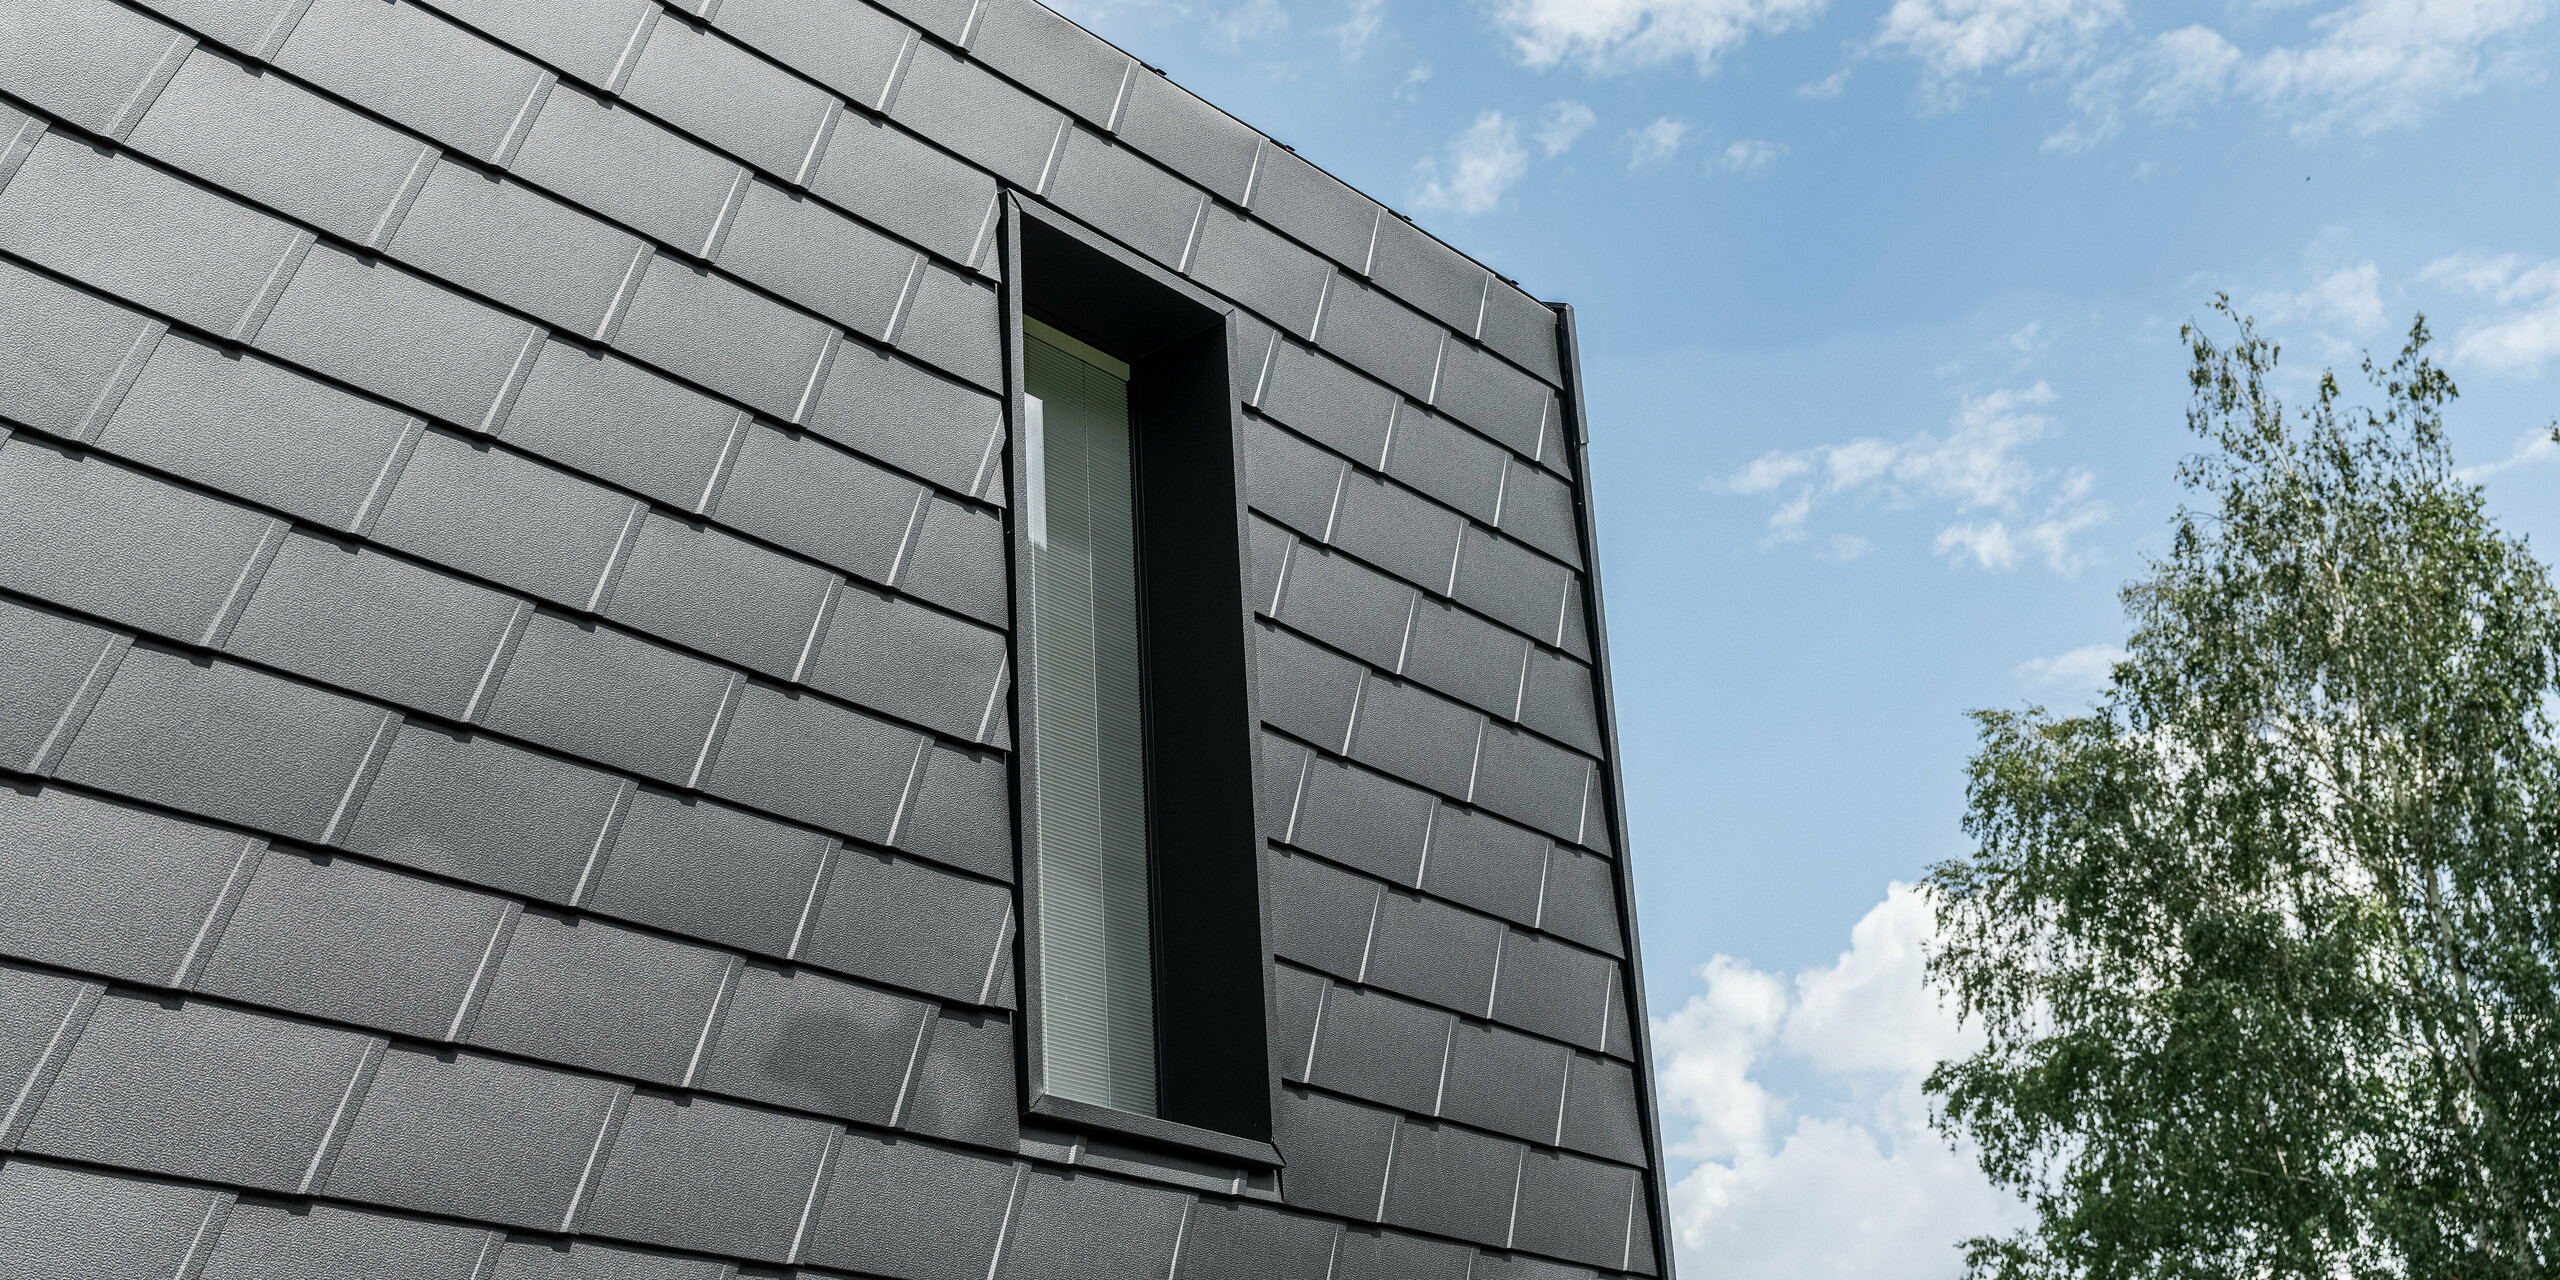 Detailansicht einer Fassade mit PREFA Wandschindeln in Schwarz, die ein schlankes, vertikales Fenster einrahmt. Die Schindeln bieten eine strukturierte, robuste Oberfläche, die ästhetisch mit der natürlichen Umgebung und dem blauen Himmel kontrastiert.